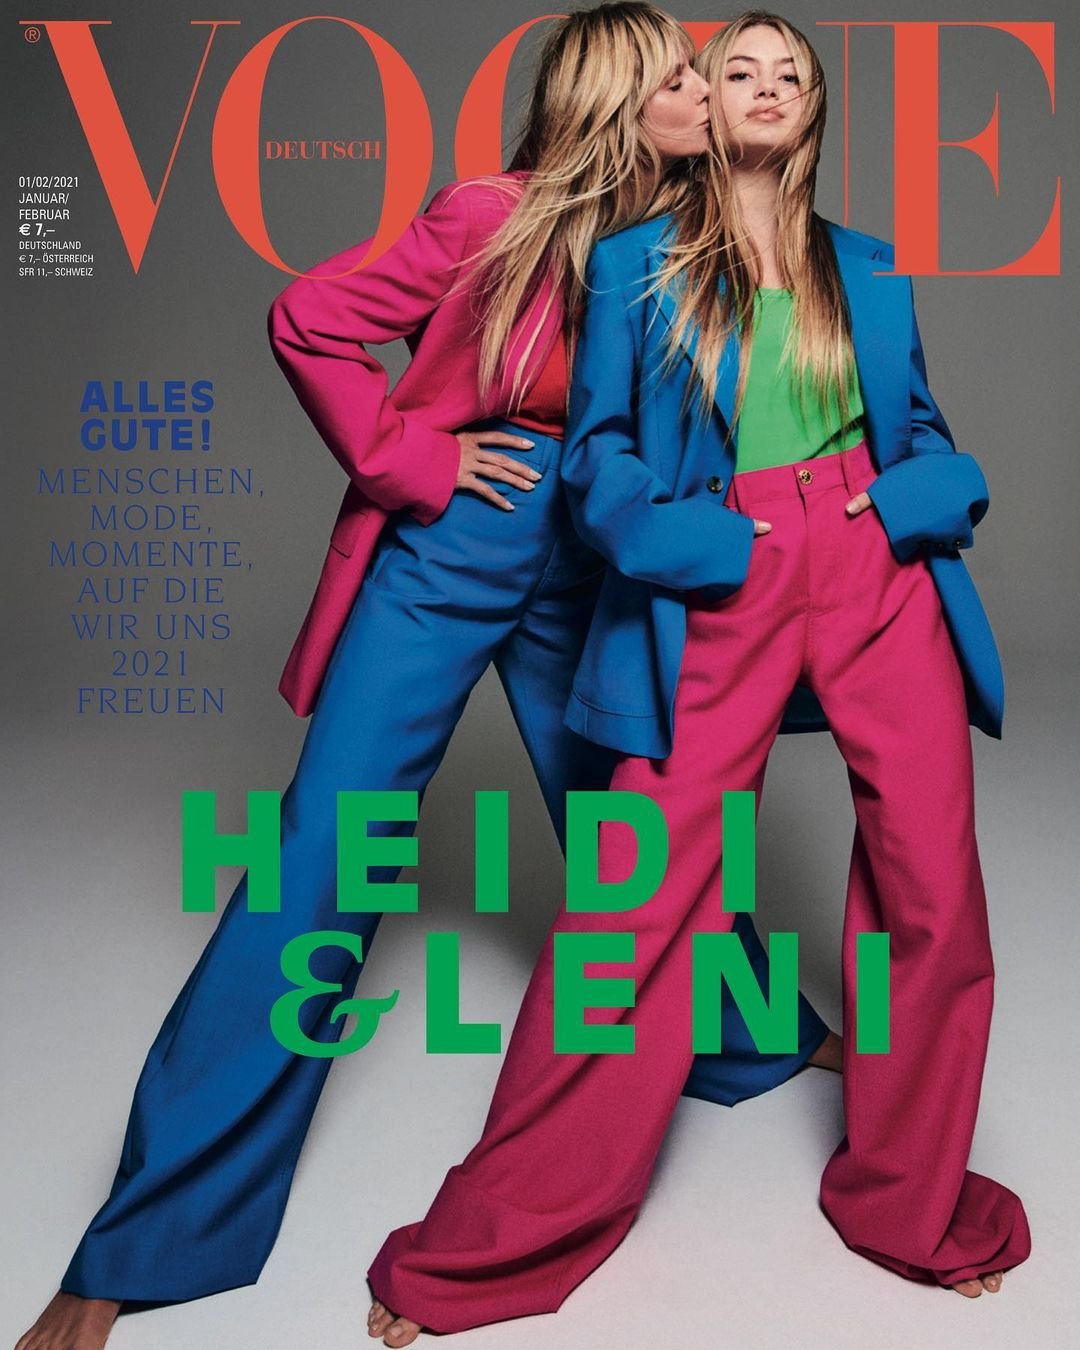 Хайди Клум впервые снялась для обложки Vogue вместе с 16-летней дочерью 